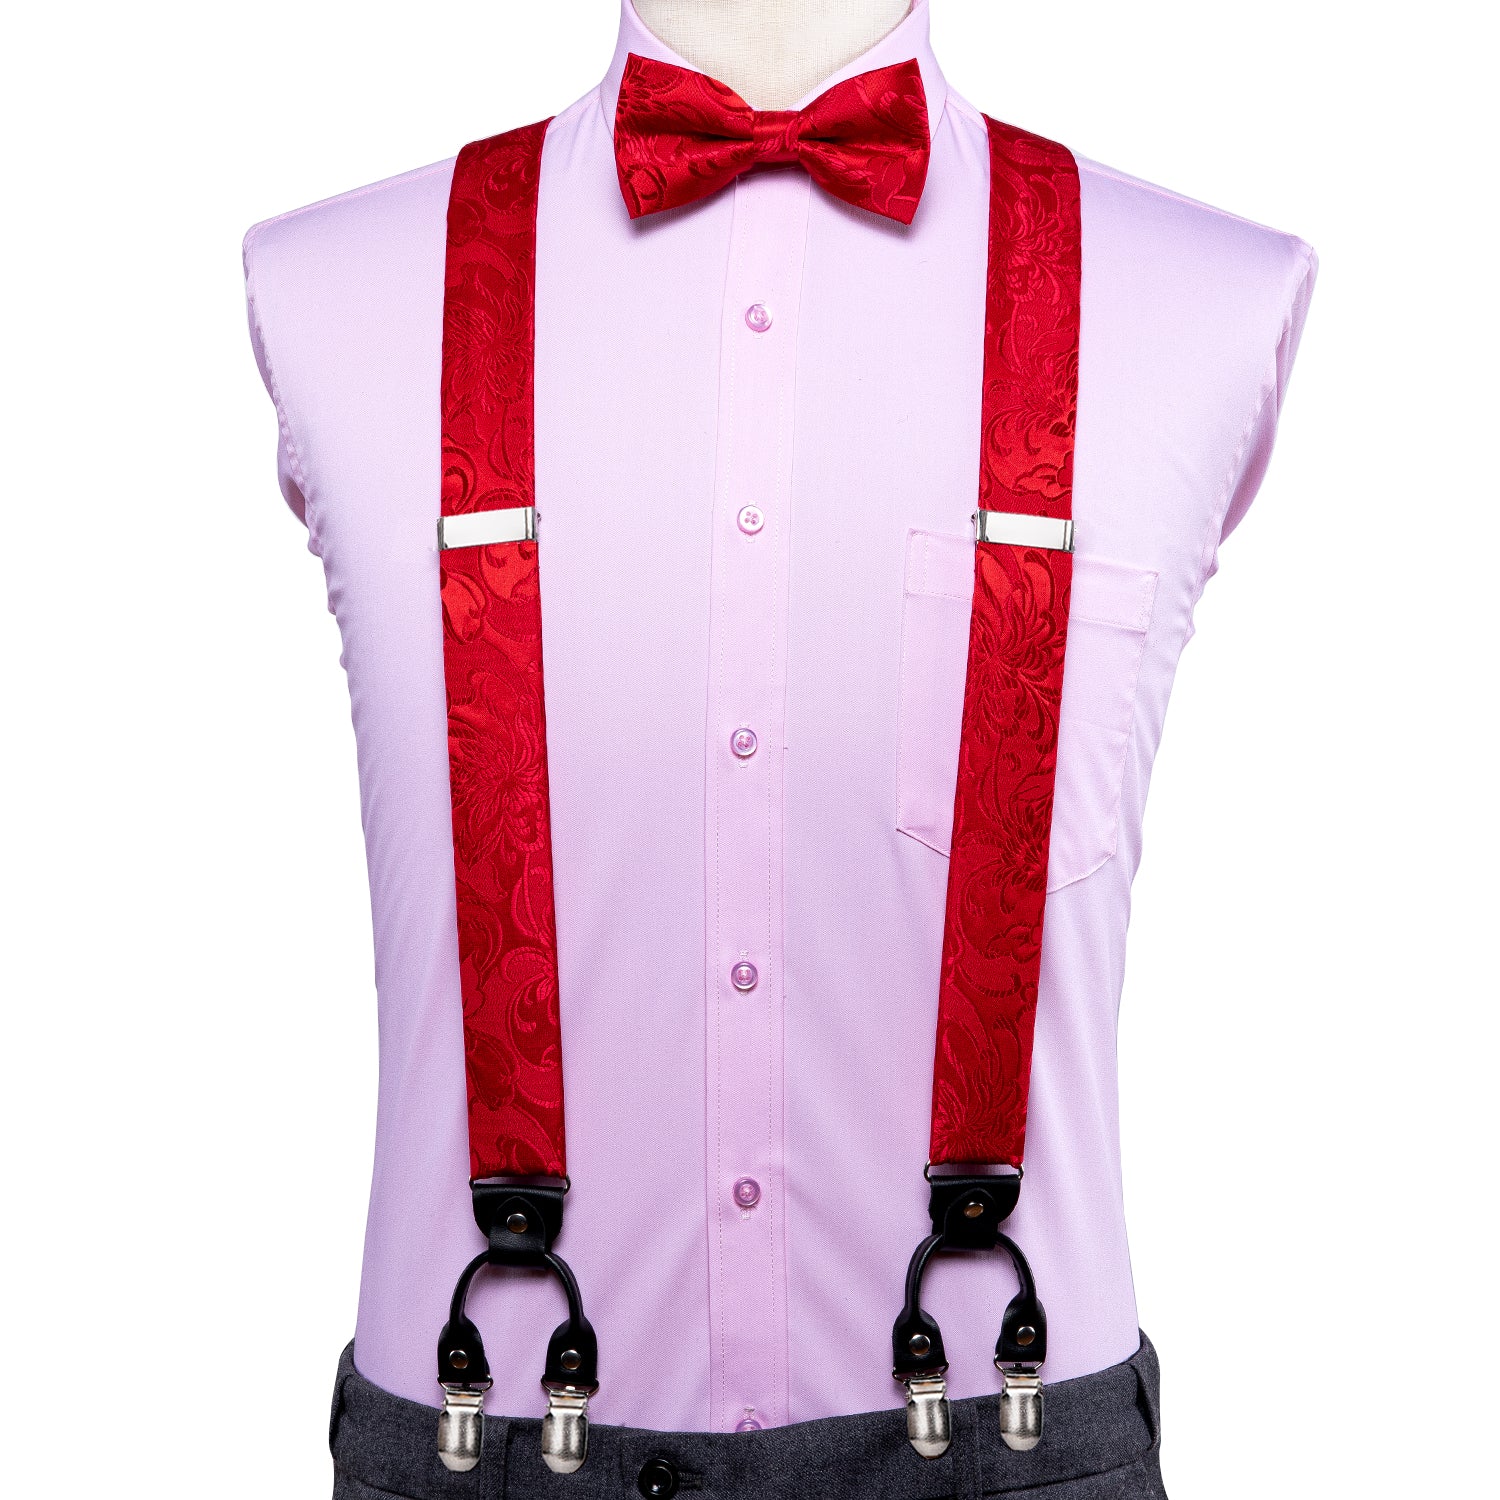 Red Floral  Suspender Bow Tie Handkerchief Cufflinks Set